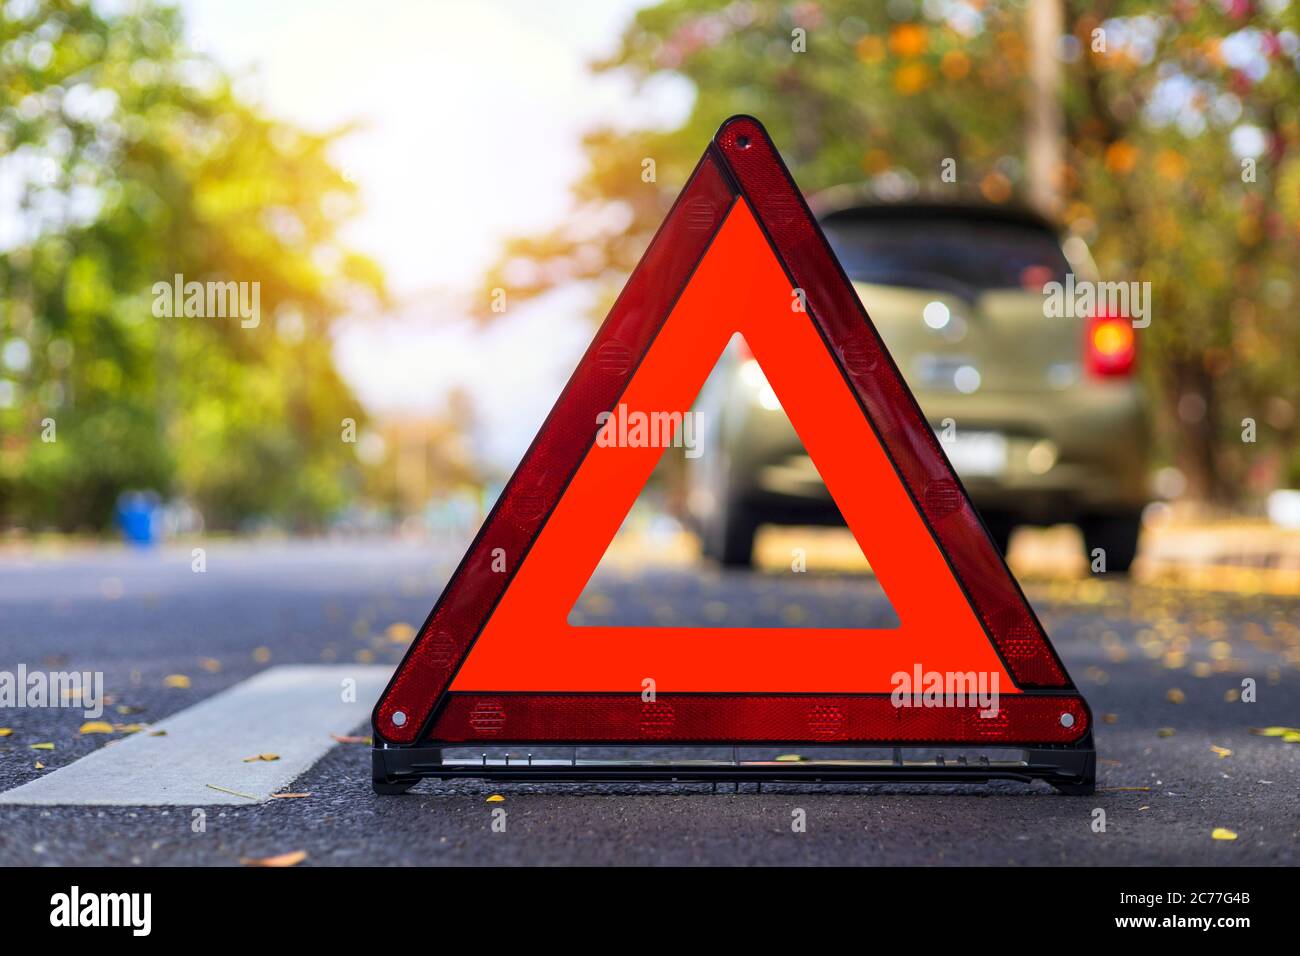 Triangle rouge, panneau d'arrêt d'urgence rouge, symbole d'urgence rouge, arrêt de voiture et stationnement sur la route. Banque D'Images